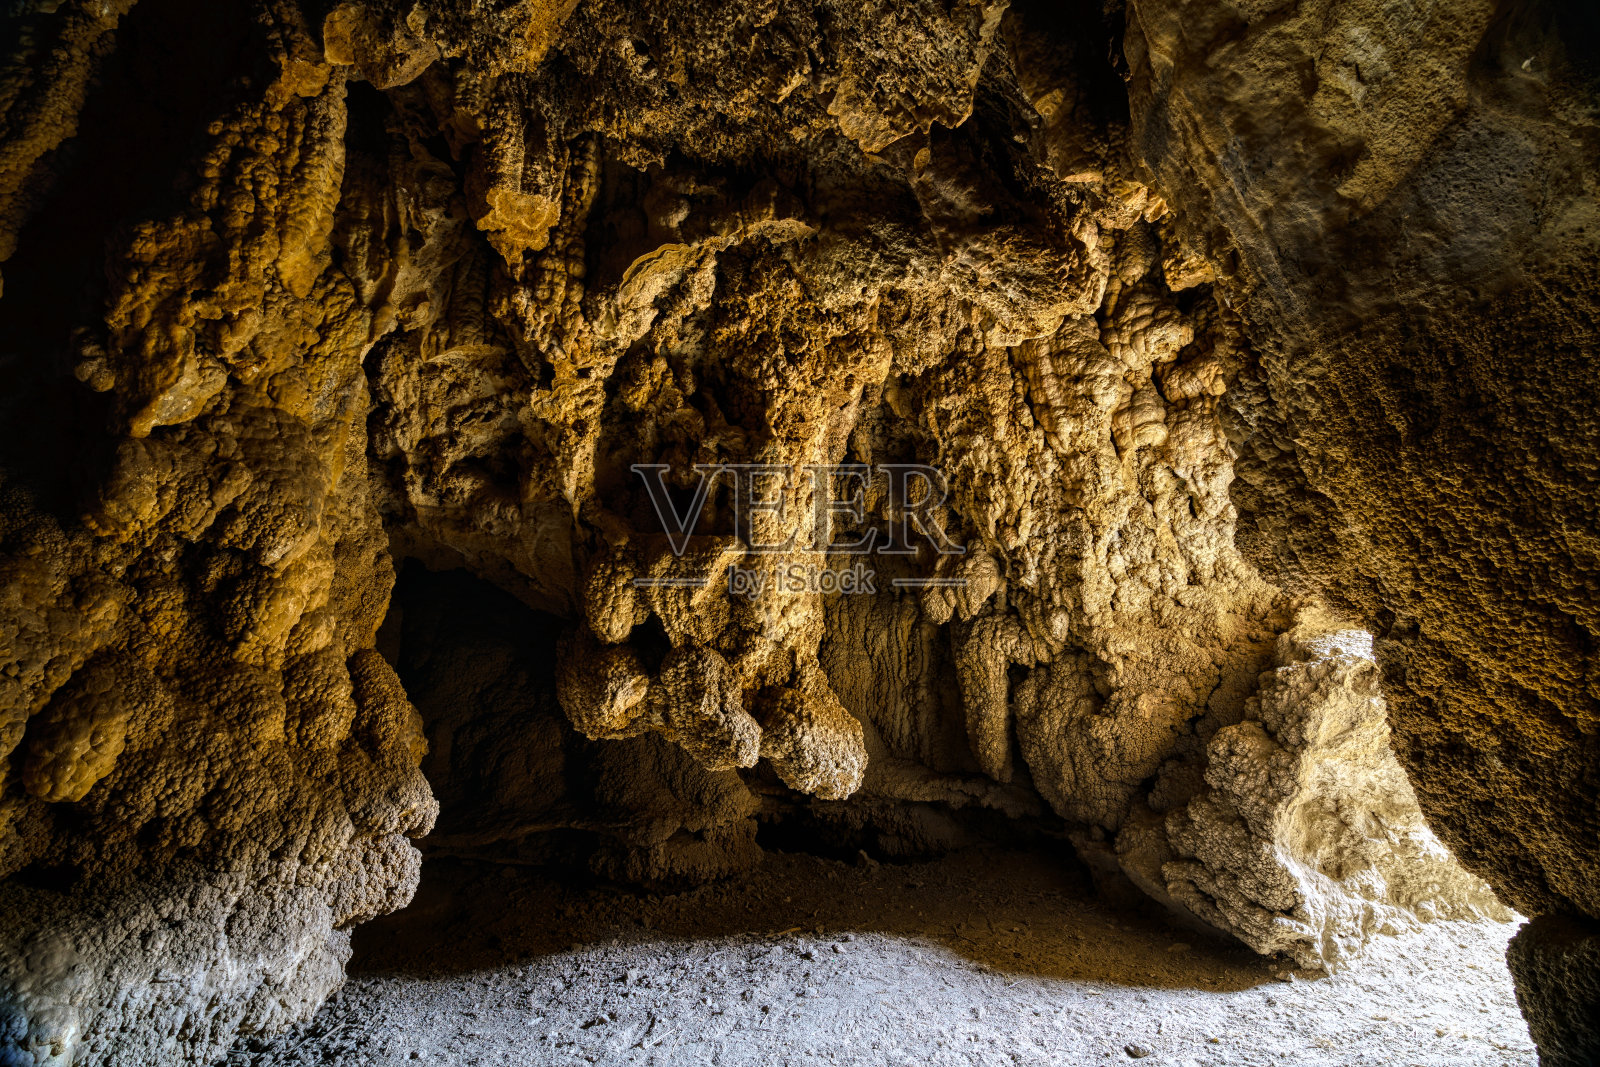 石灰岩洞穴入口照片摄影图片